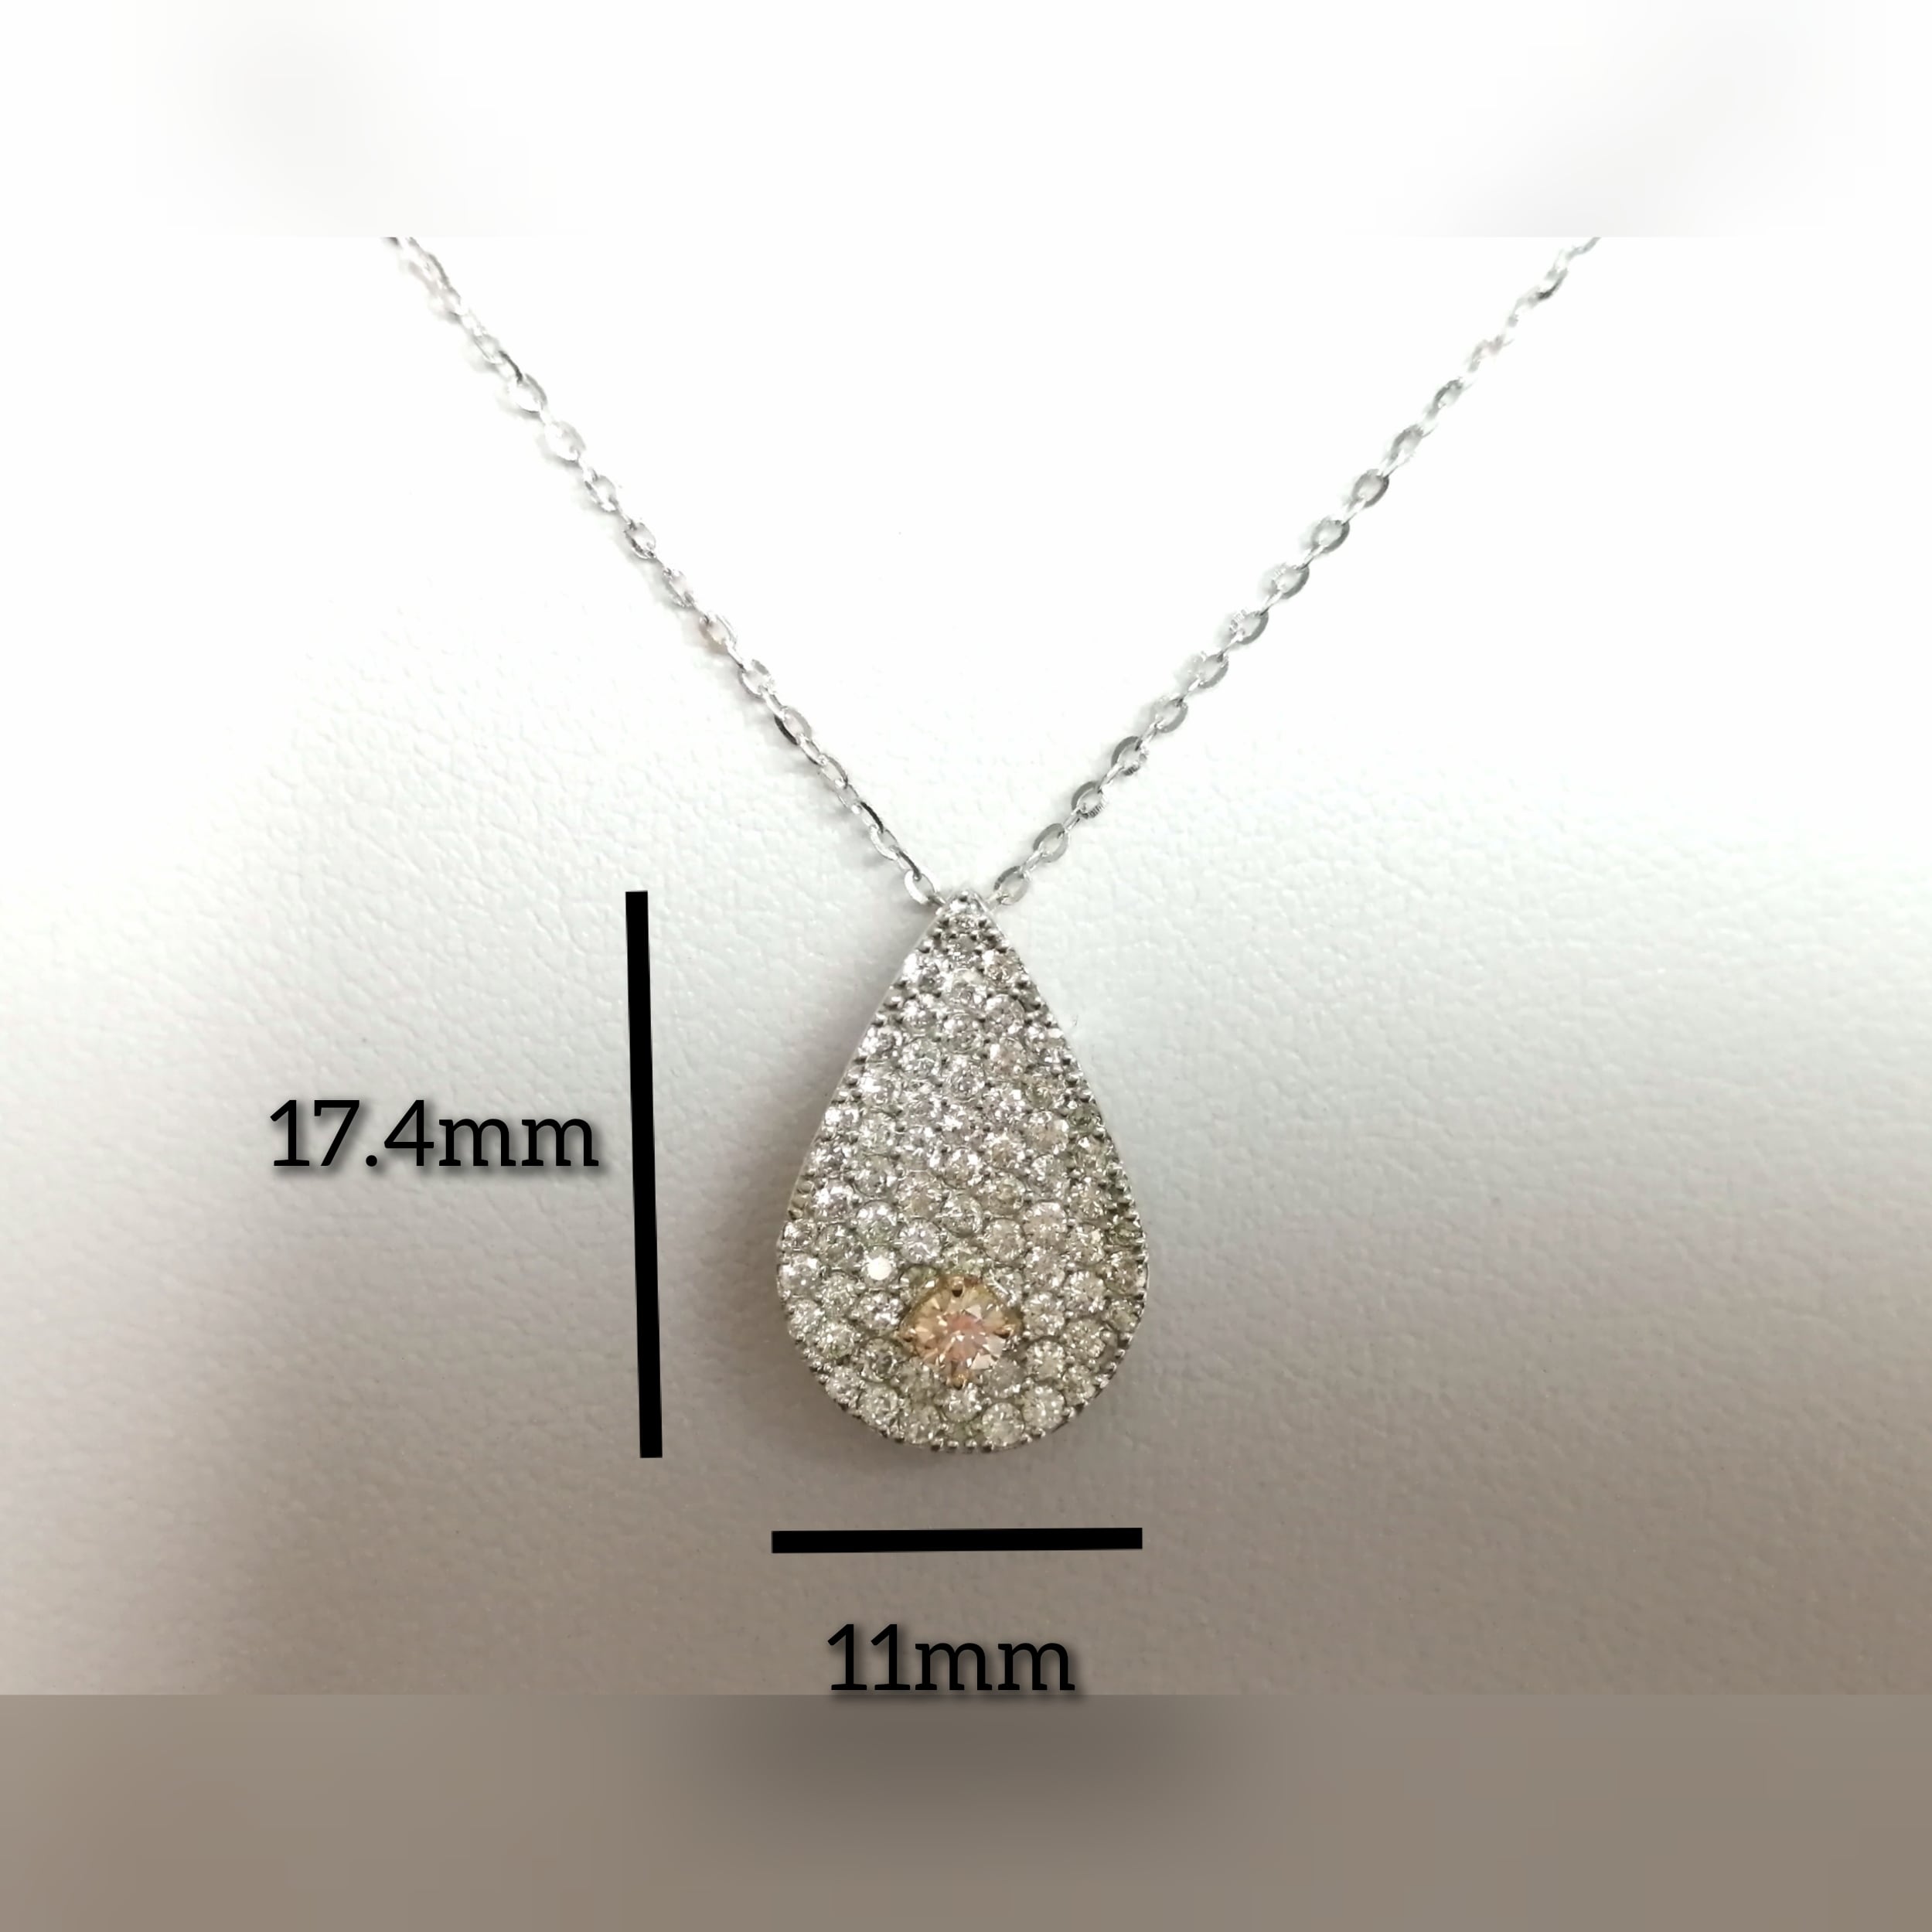 K18WGピンクダイヤモンド(flp0.080ct SI1)/ダイヤモンド(D0.64ct ...